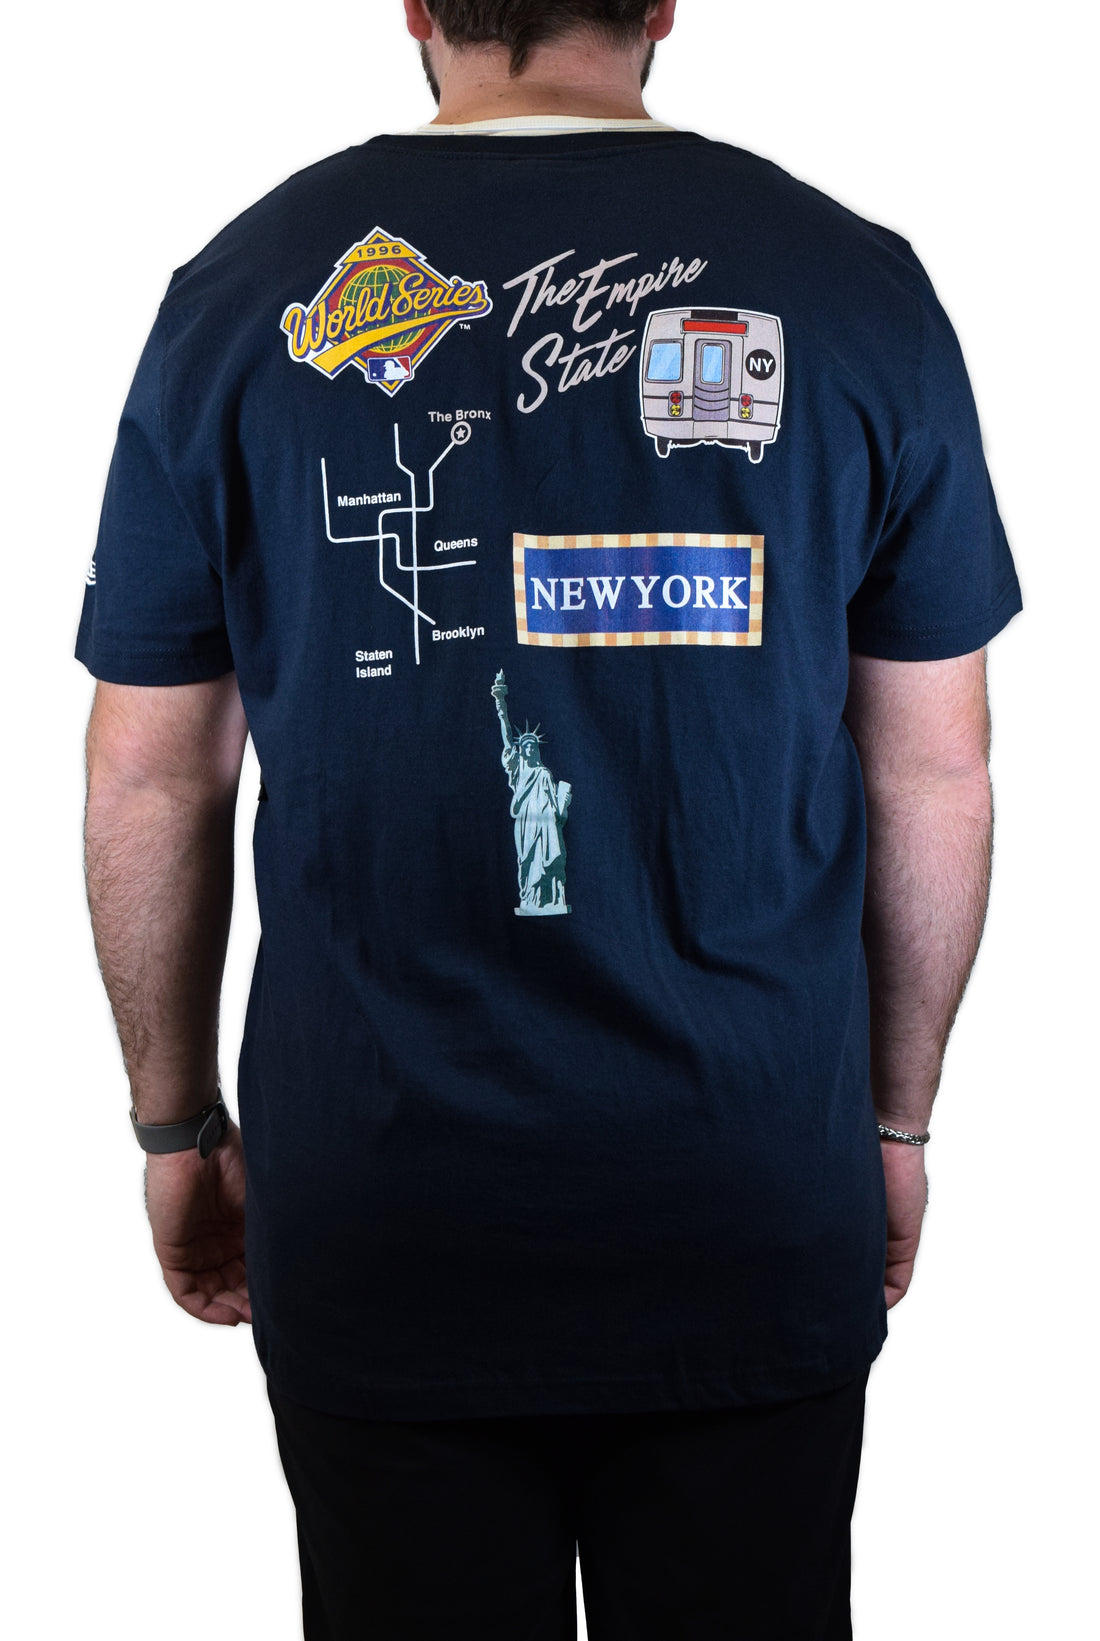 New Era New York Yankees Classic Logo Shirt - Navy